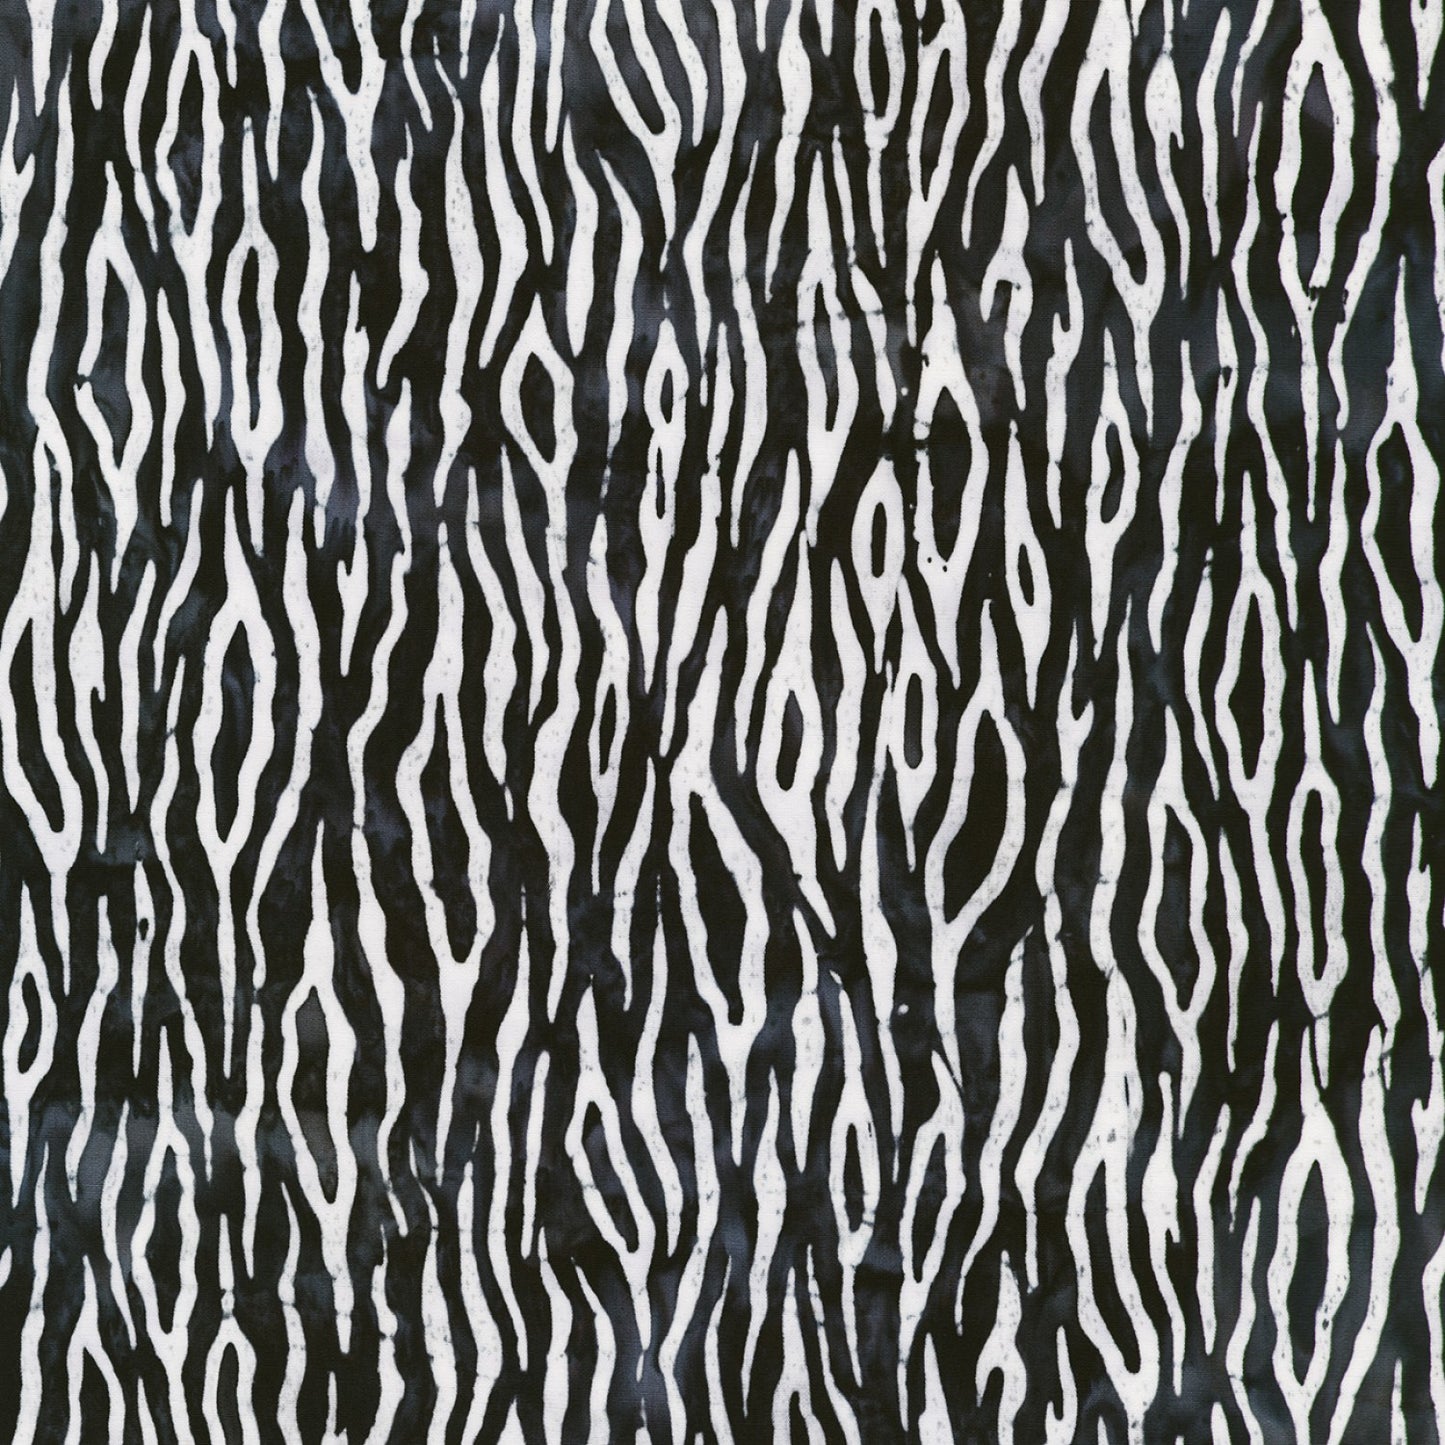 Serengeti Batiks - Pepper - Zebra - Cotton Fabric